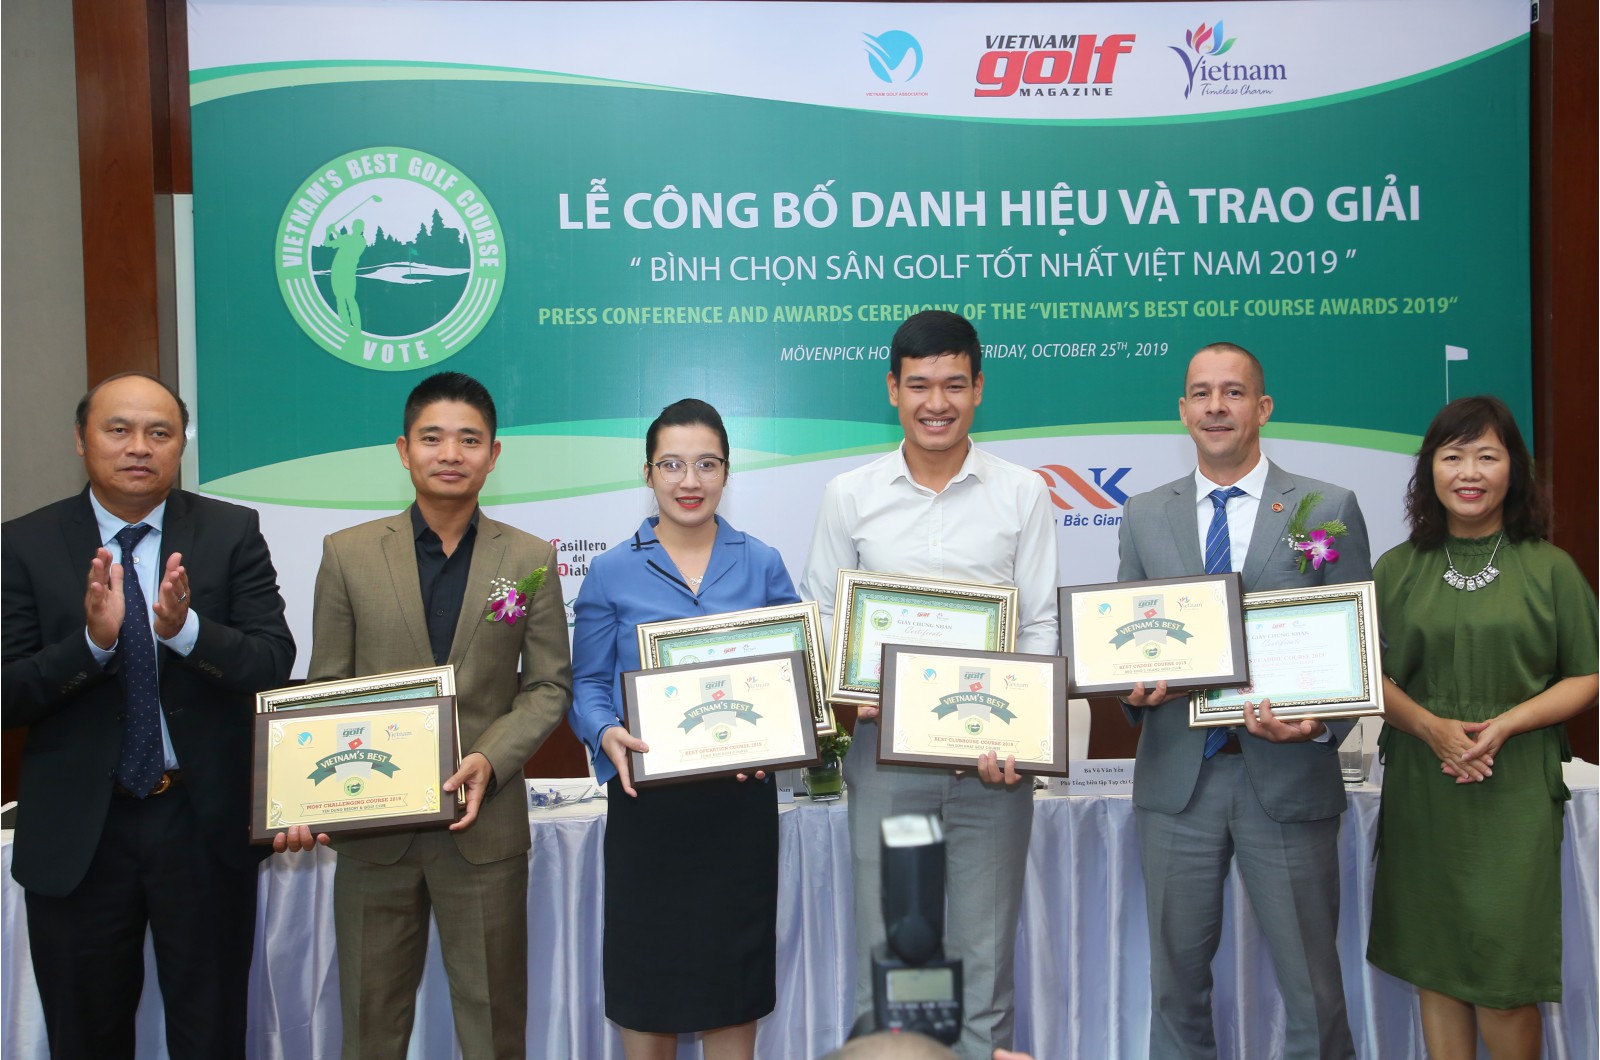  Ông Trương Chí Kiên - Giám đốc Công ty Cổ phần QNK Bắc Giang, chủ đầu tư dự án Sân golf, dịch vụ Yên Dũng (thứ 2 từ bên trái qua) nhận giải thưởng